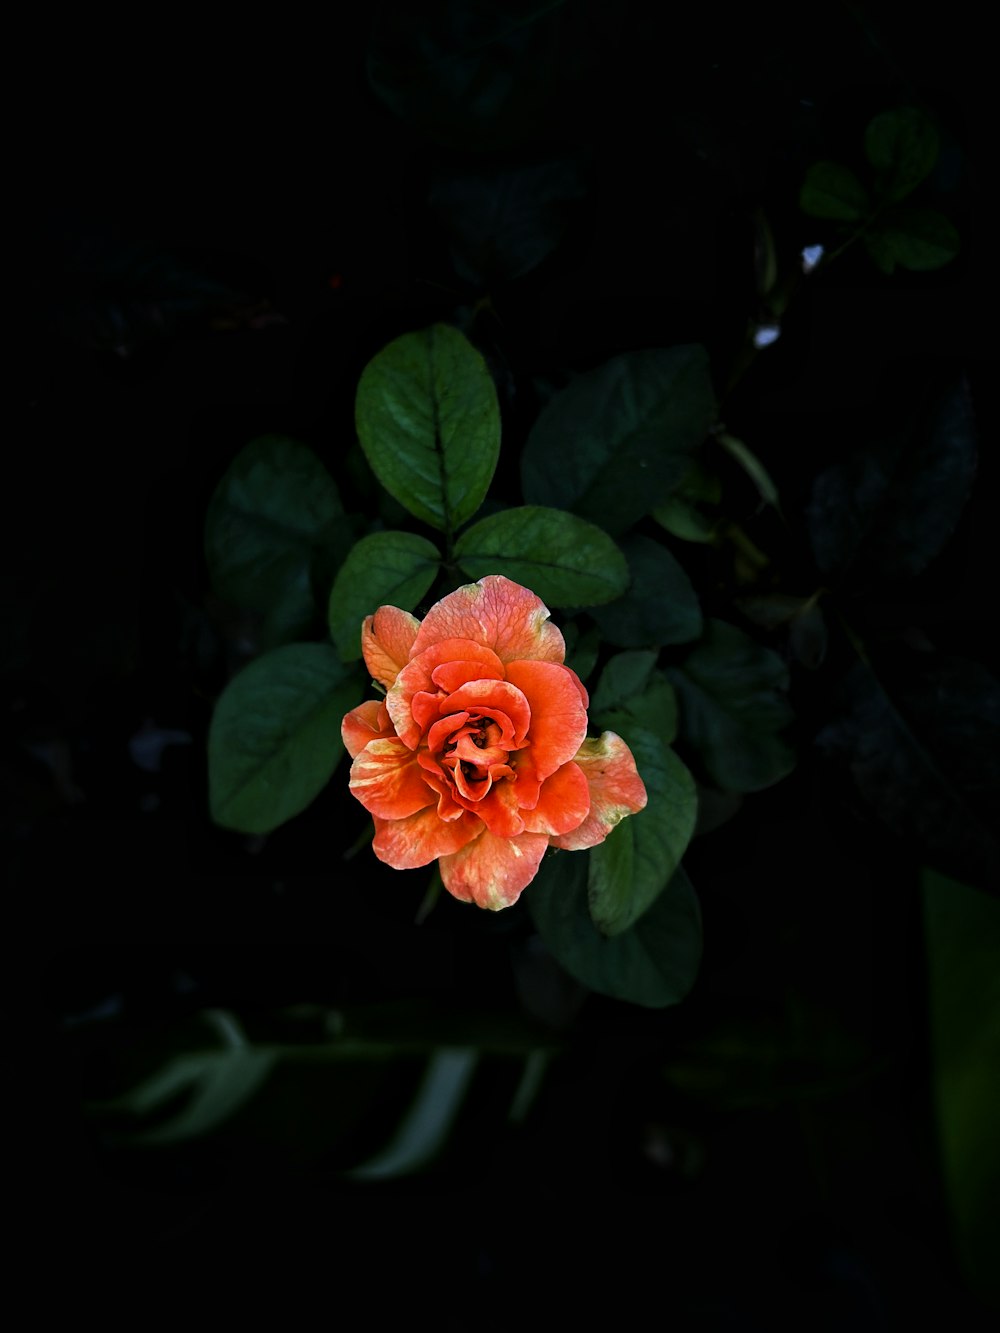 eine orangefarbene Blume mit grünen Blättern im Hintergrund